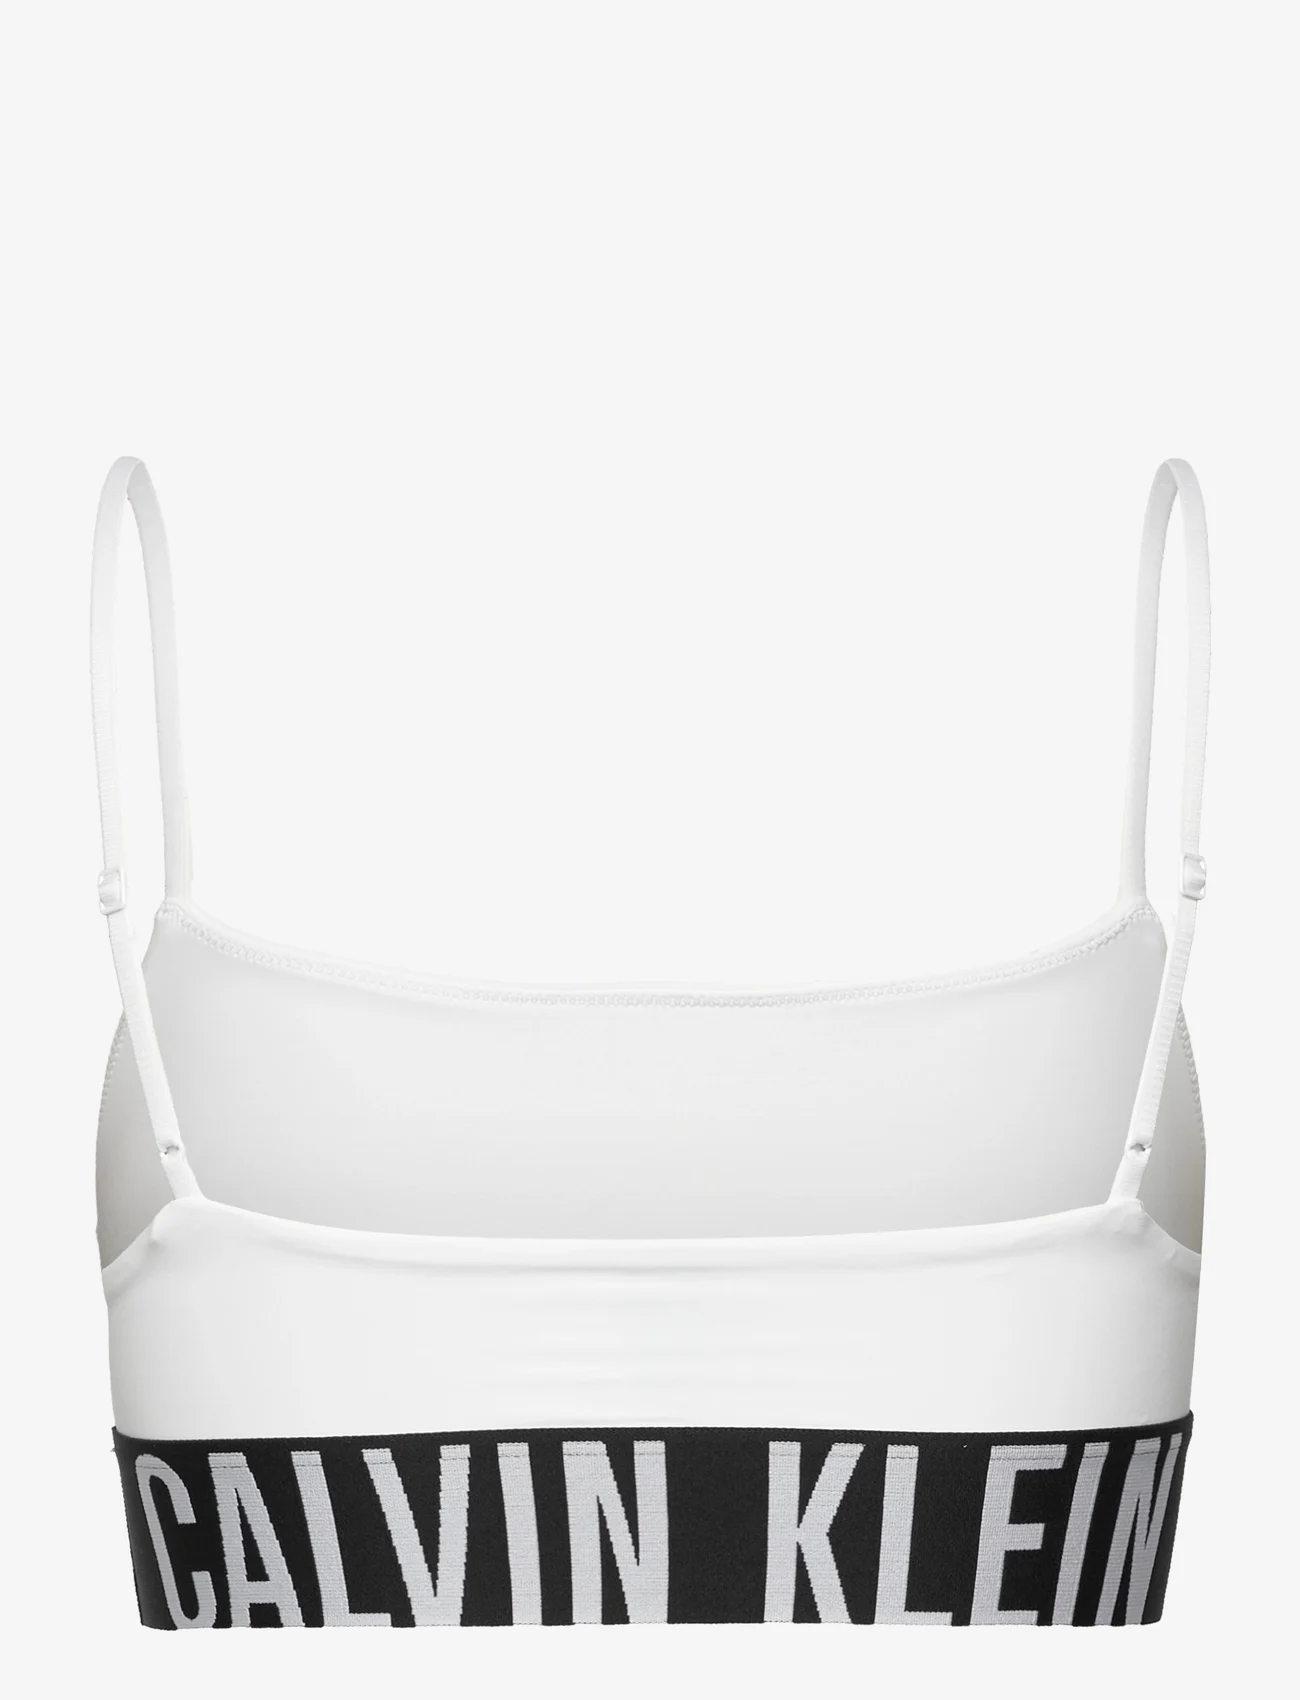 Calvin Klein - UNLINED BRALETTE - braletki - white - 1